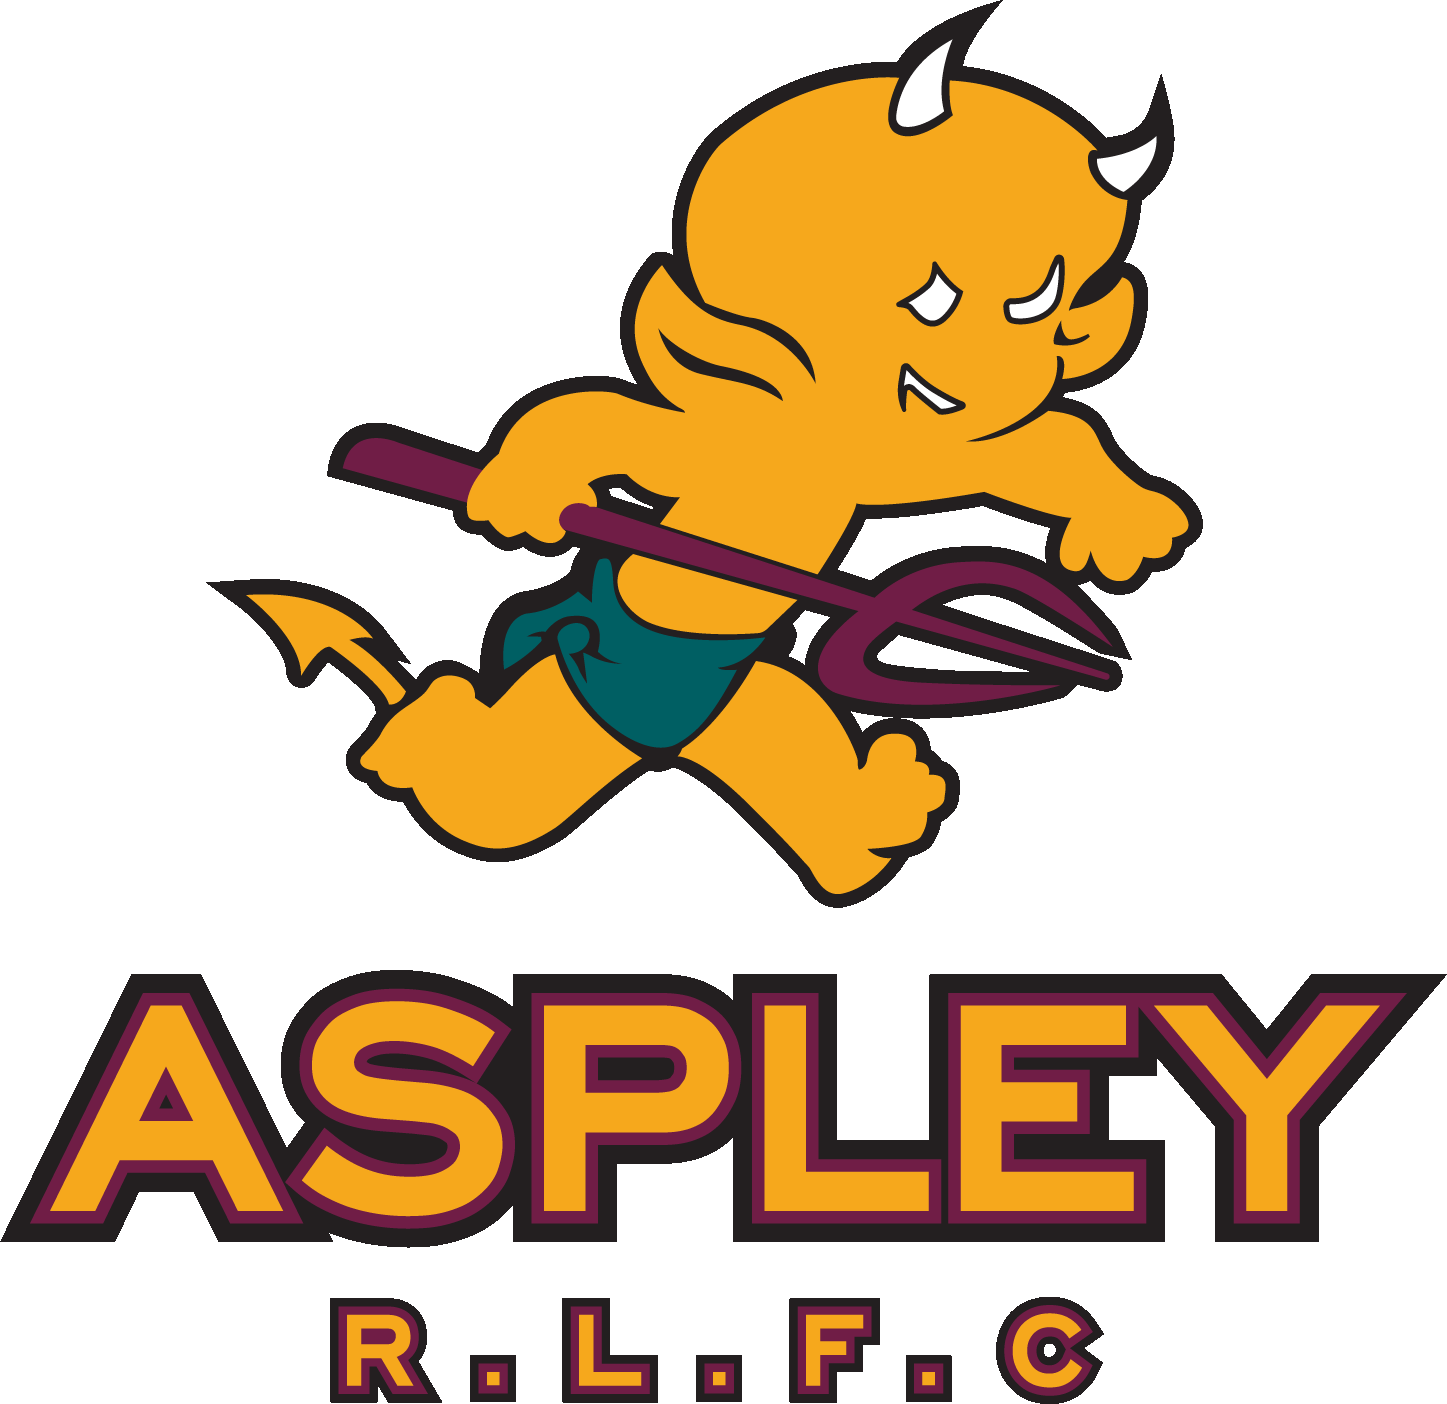 Aspley Rugby League Football Club